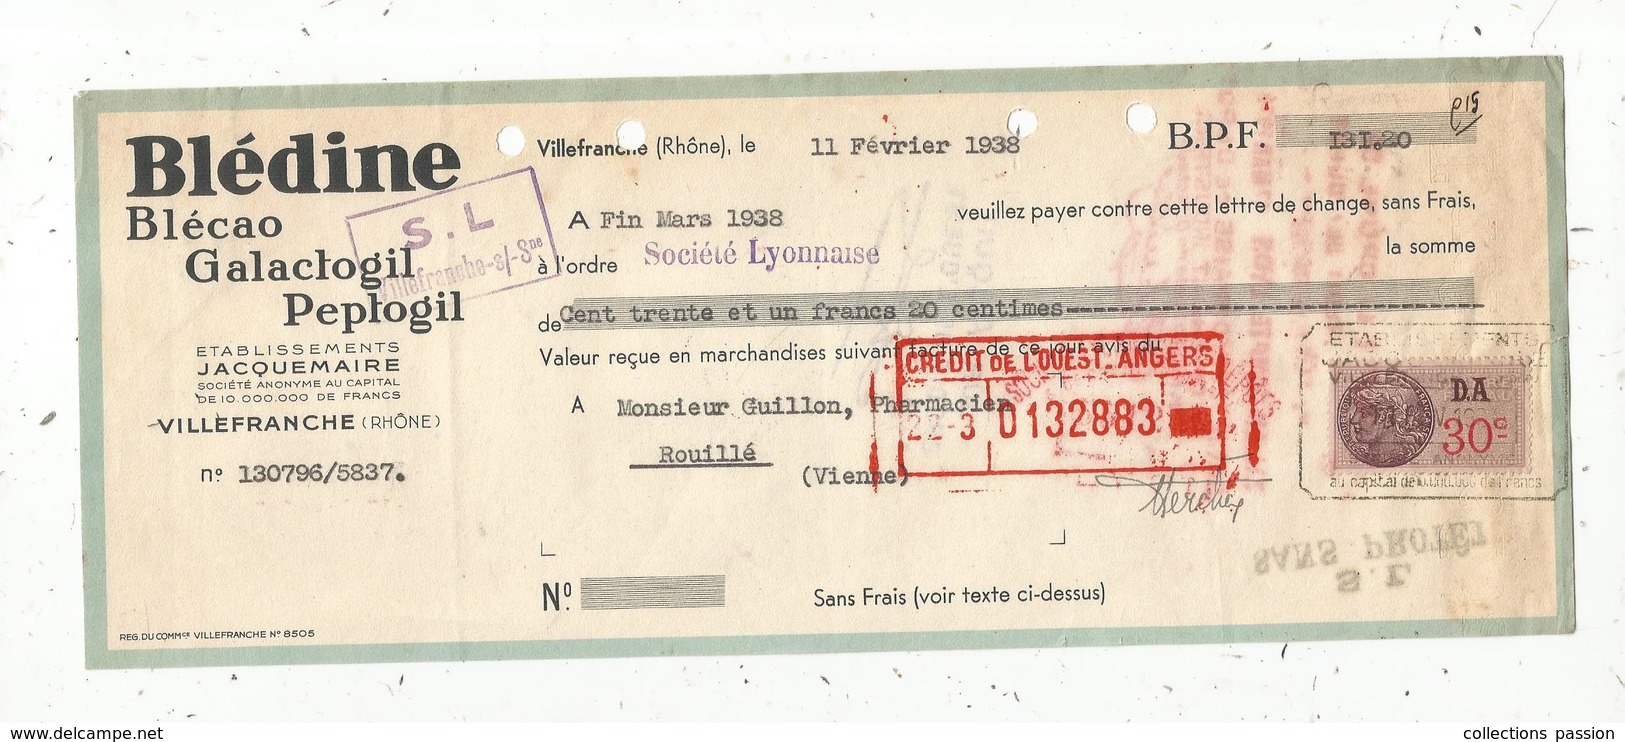 Lettre De Change, 1938 , BLEDINE , BLECAO ,GALACTOGIL , PEPTOGIL , JACQUEMAIRE ,Villefranche, Rhône ,frais Fr 1.55 E - Bills Of Exchange